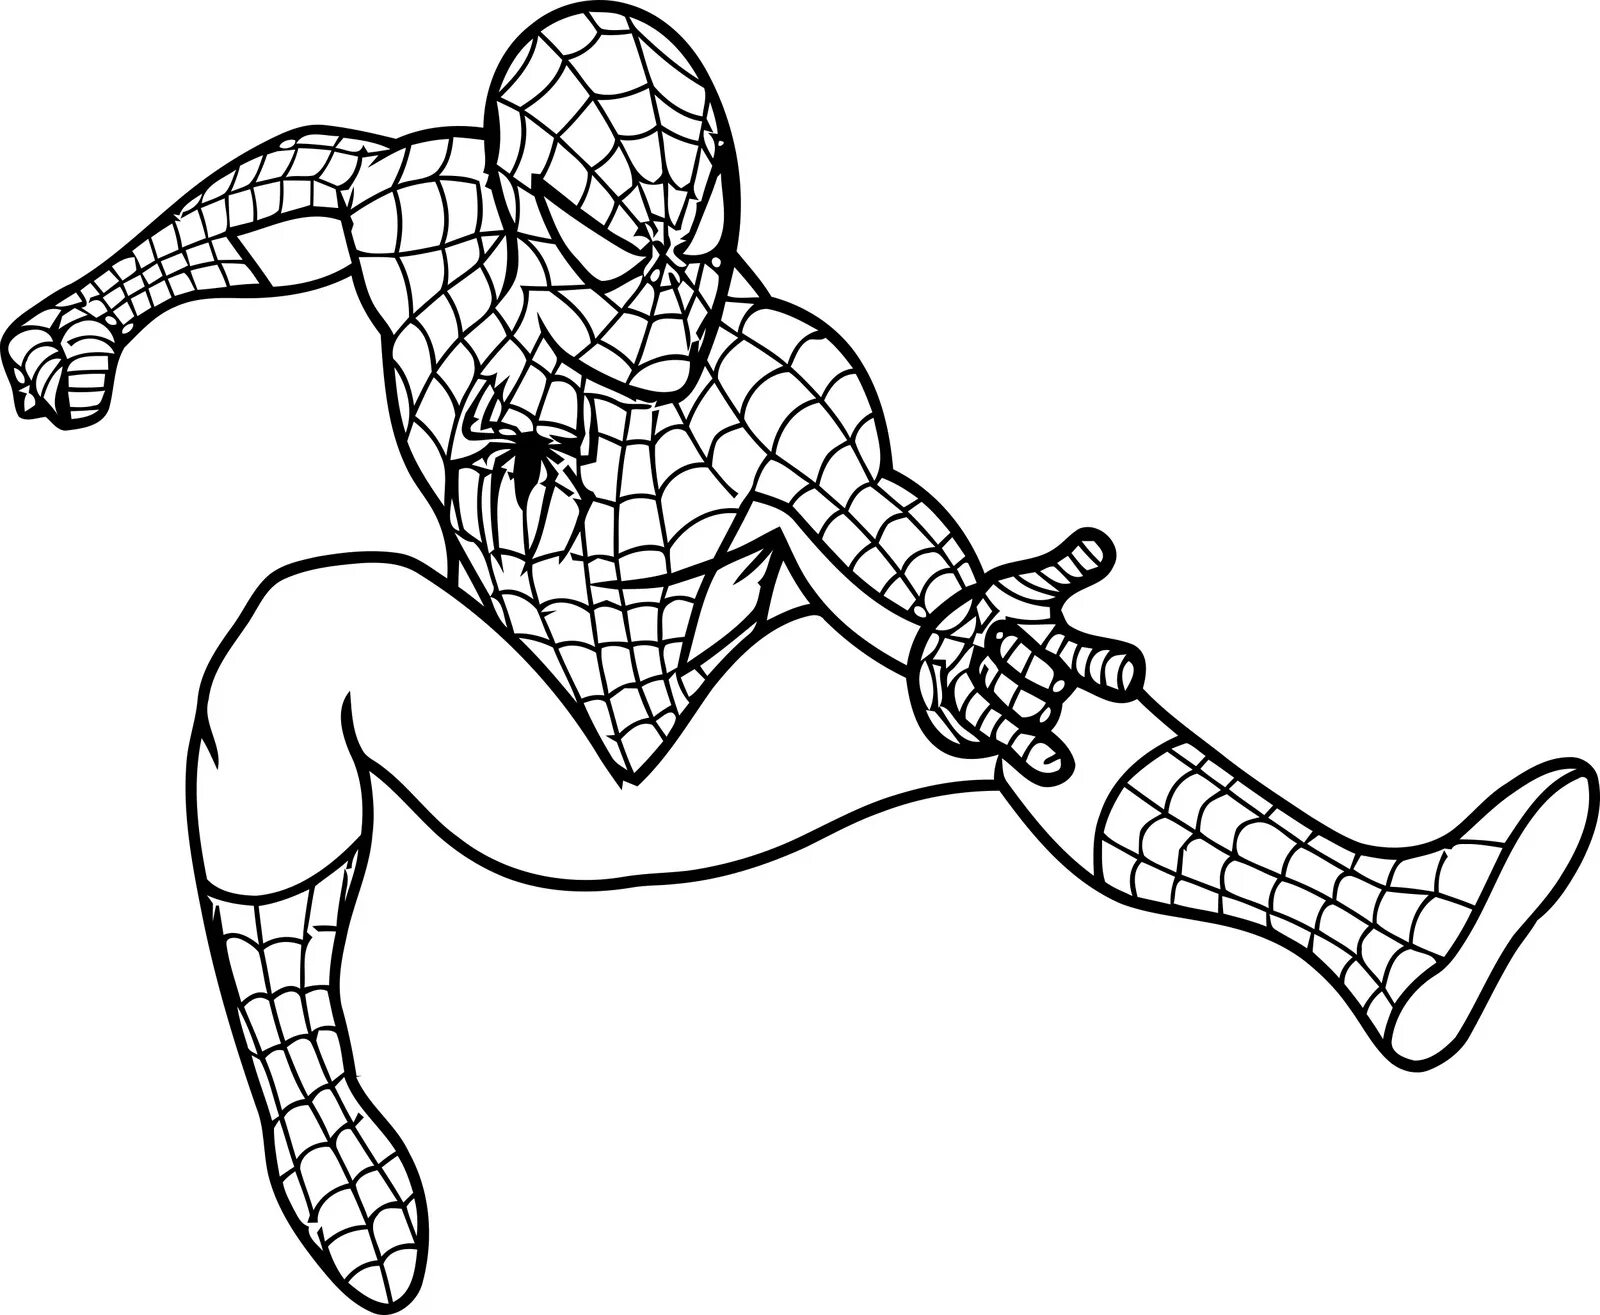 Комическая антистрессовая раскраска человека-паука